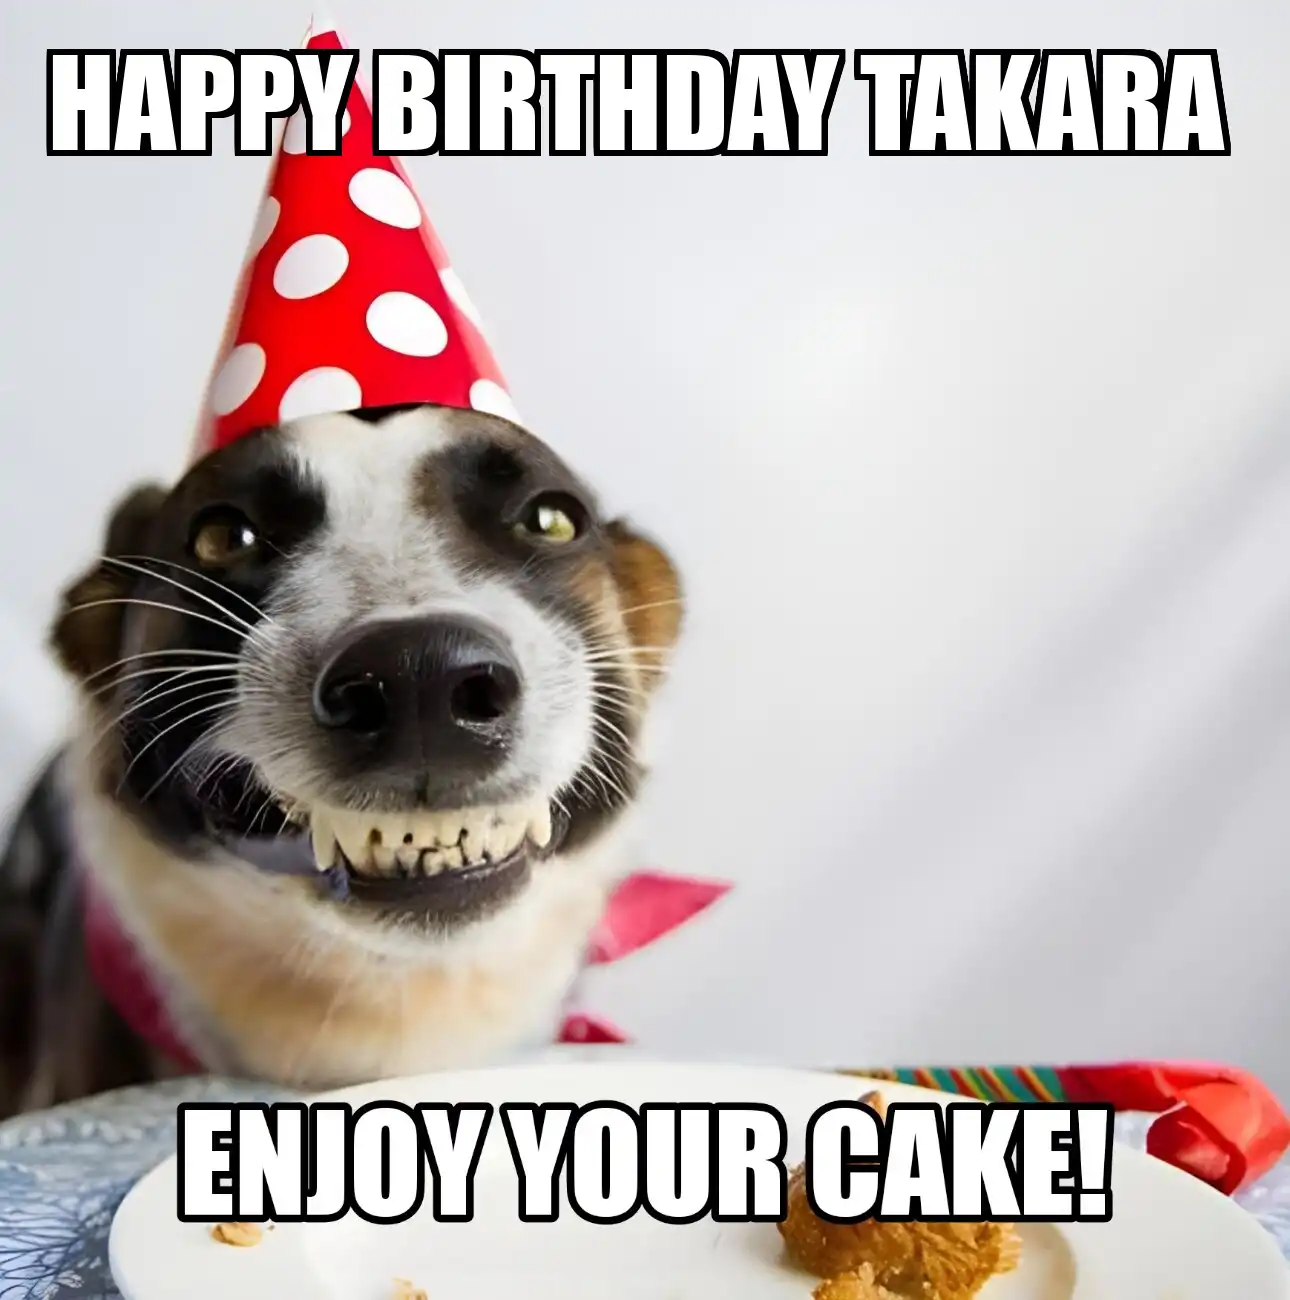 Happy Birthday Takara Enjoy Your Cake Dog Meme